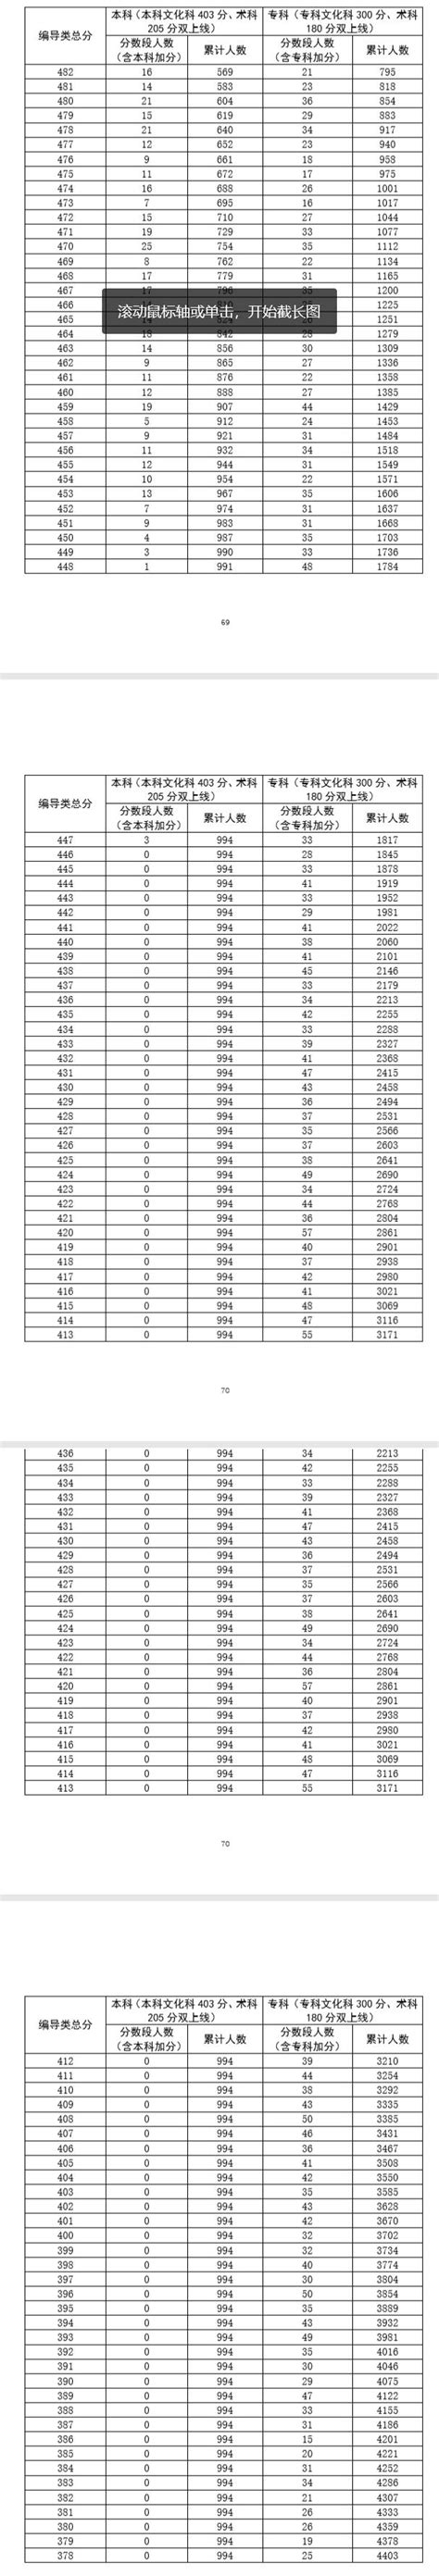 广东省2020年高考广播电视编导类总分成绩排名一分段统计表_广东高考_一品高考网